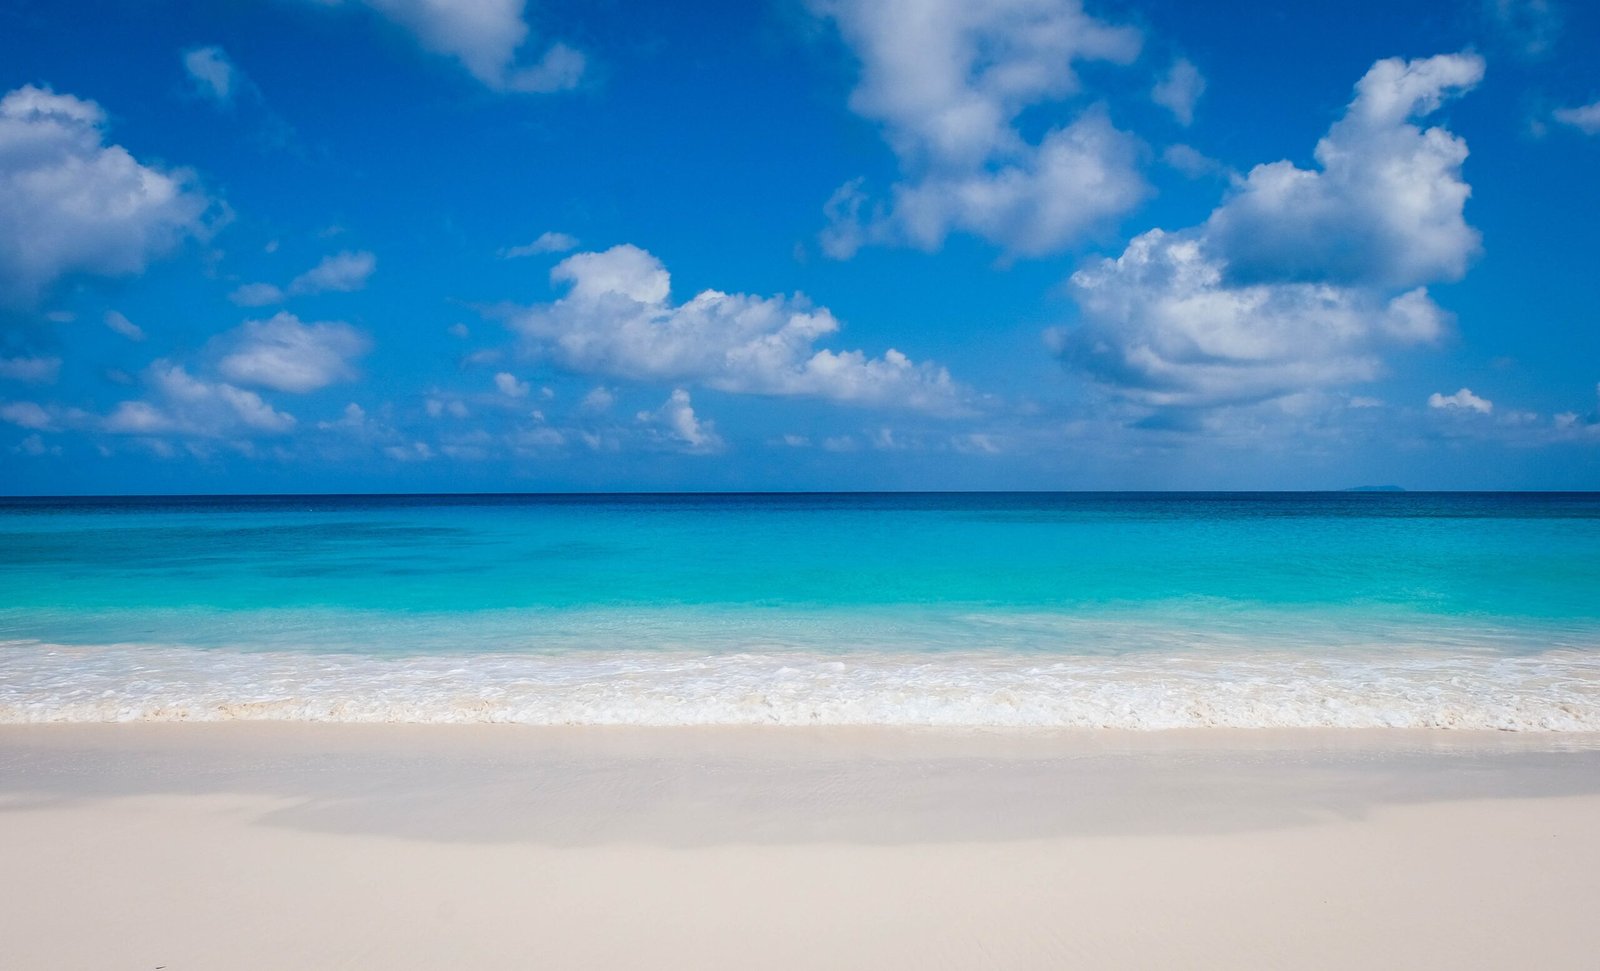 Best Beaches In Aruba